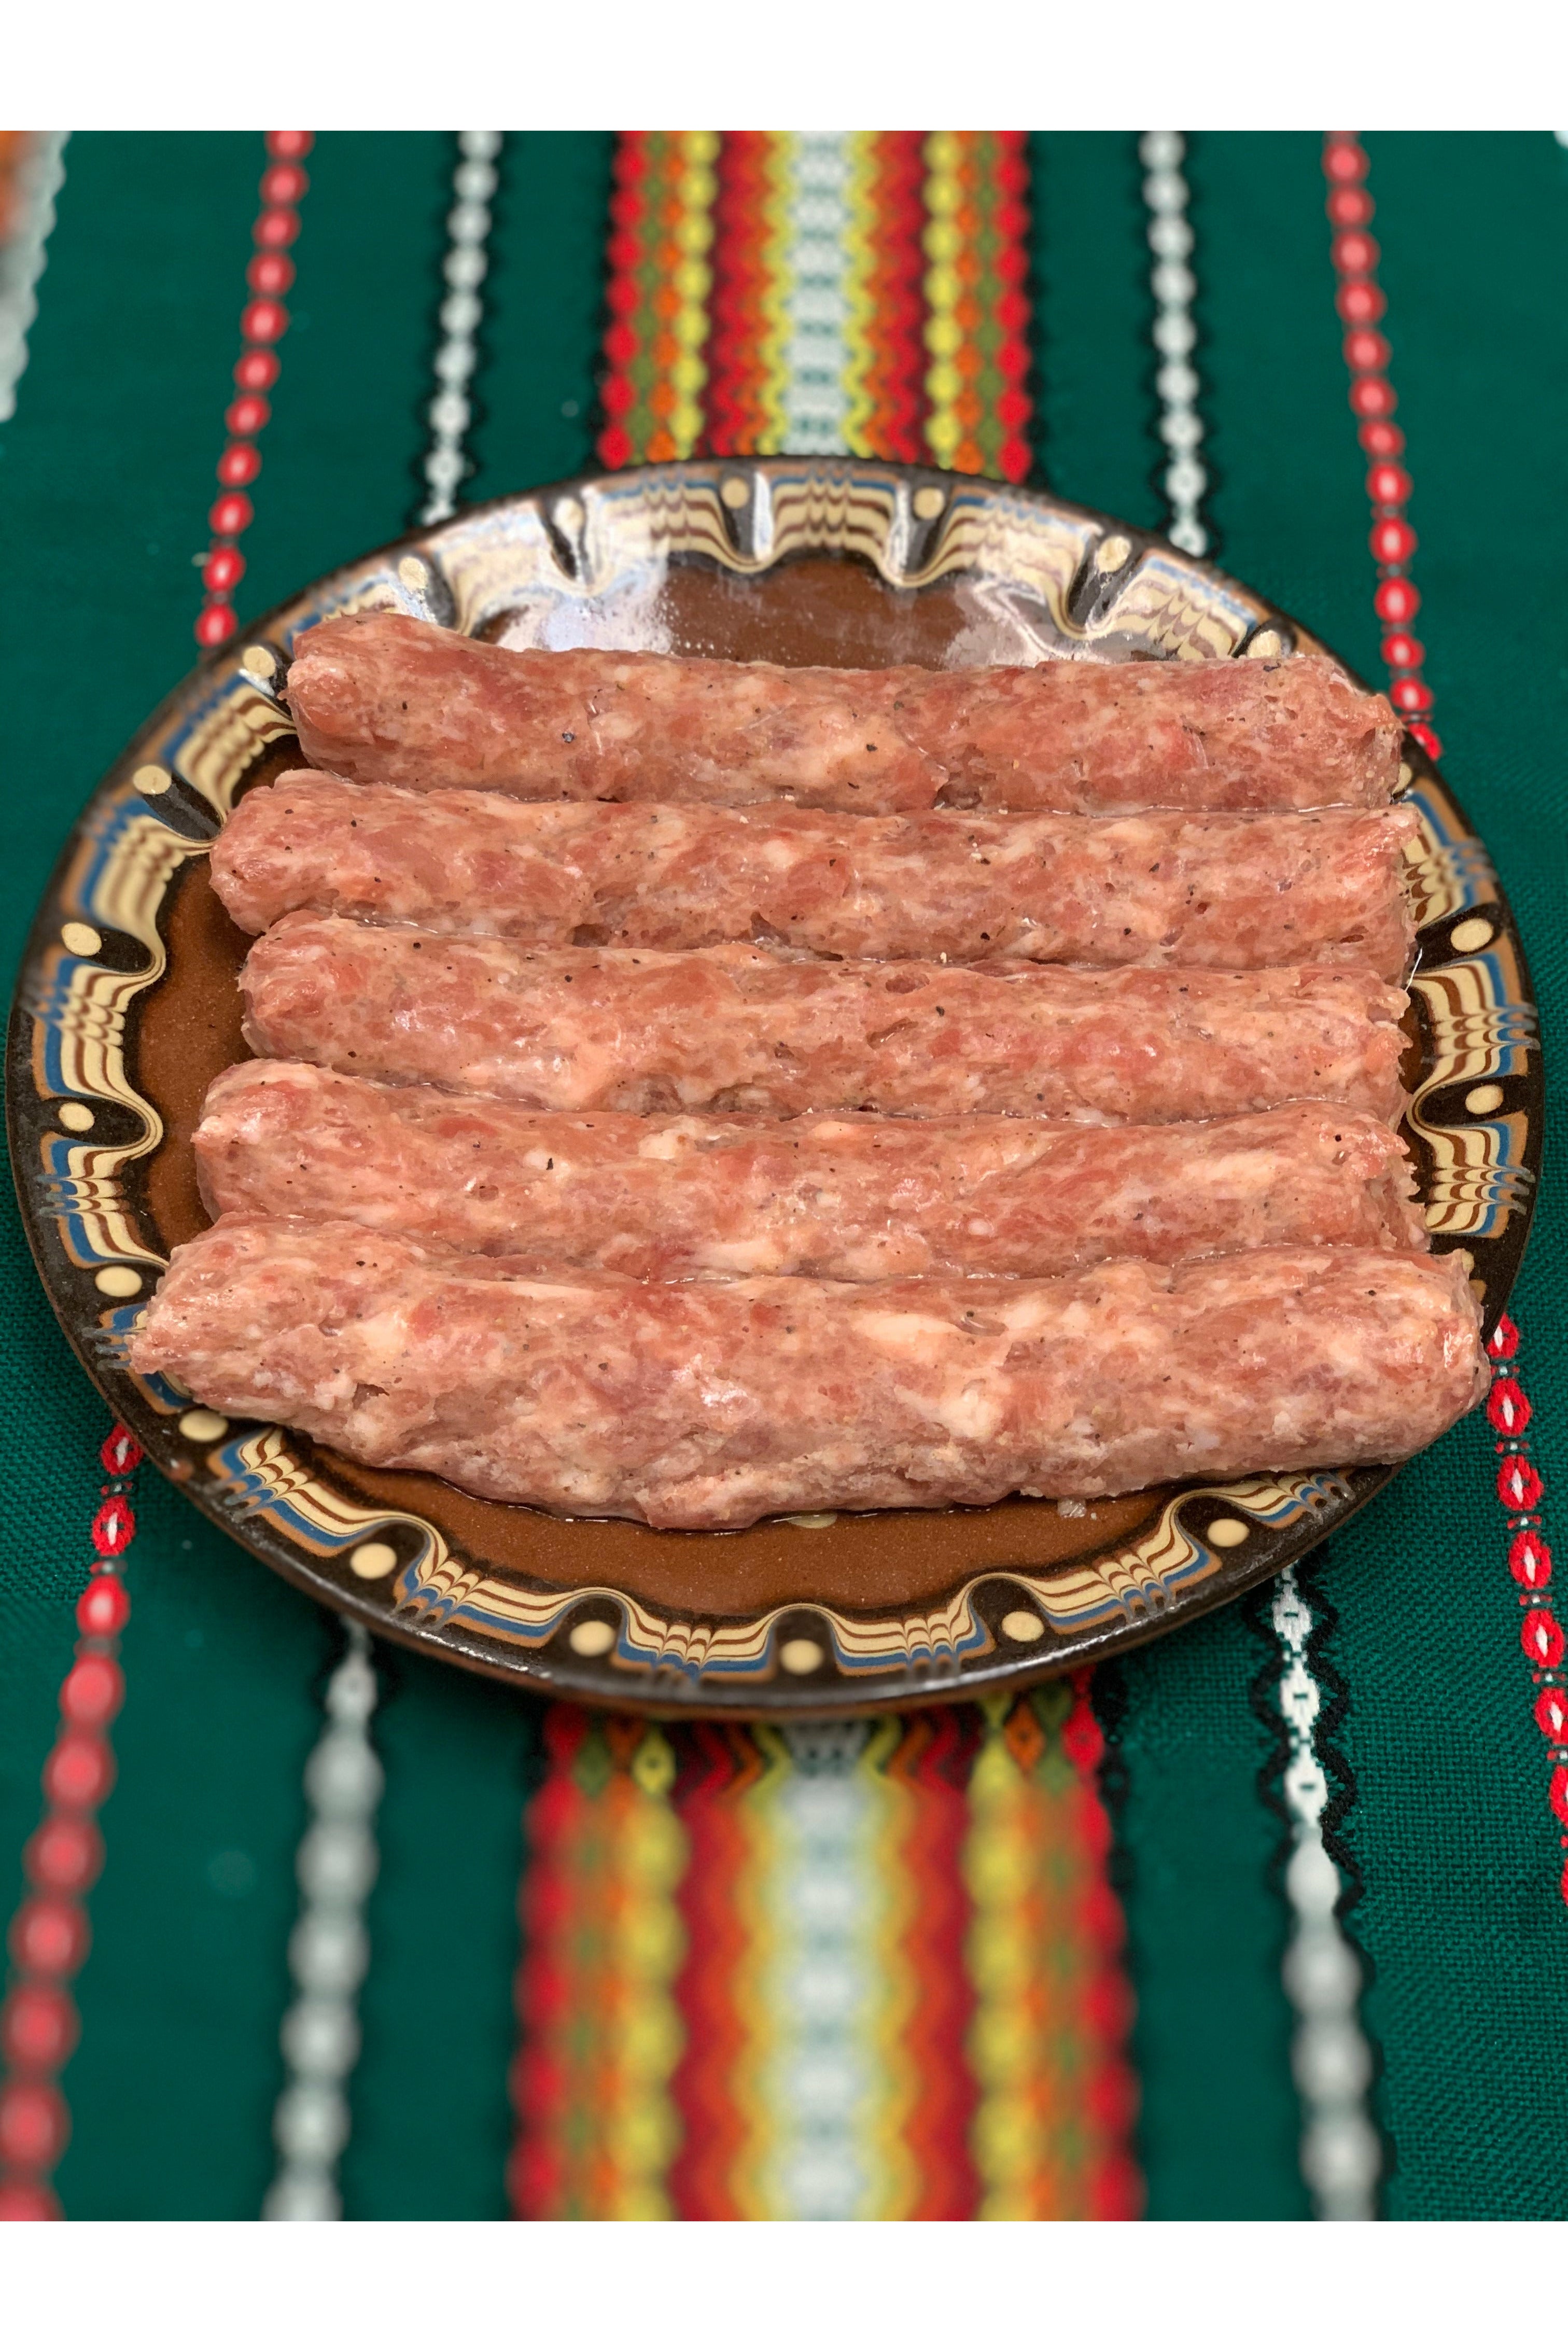 KEBAPCHE - Bulgarian Skinless Sausage